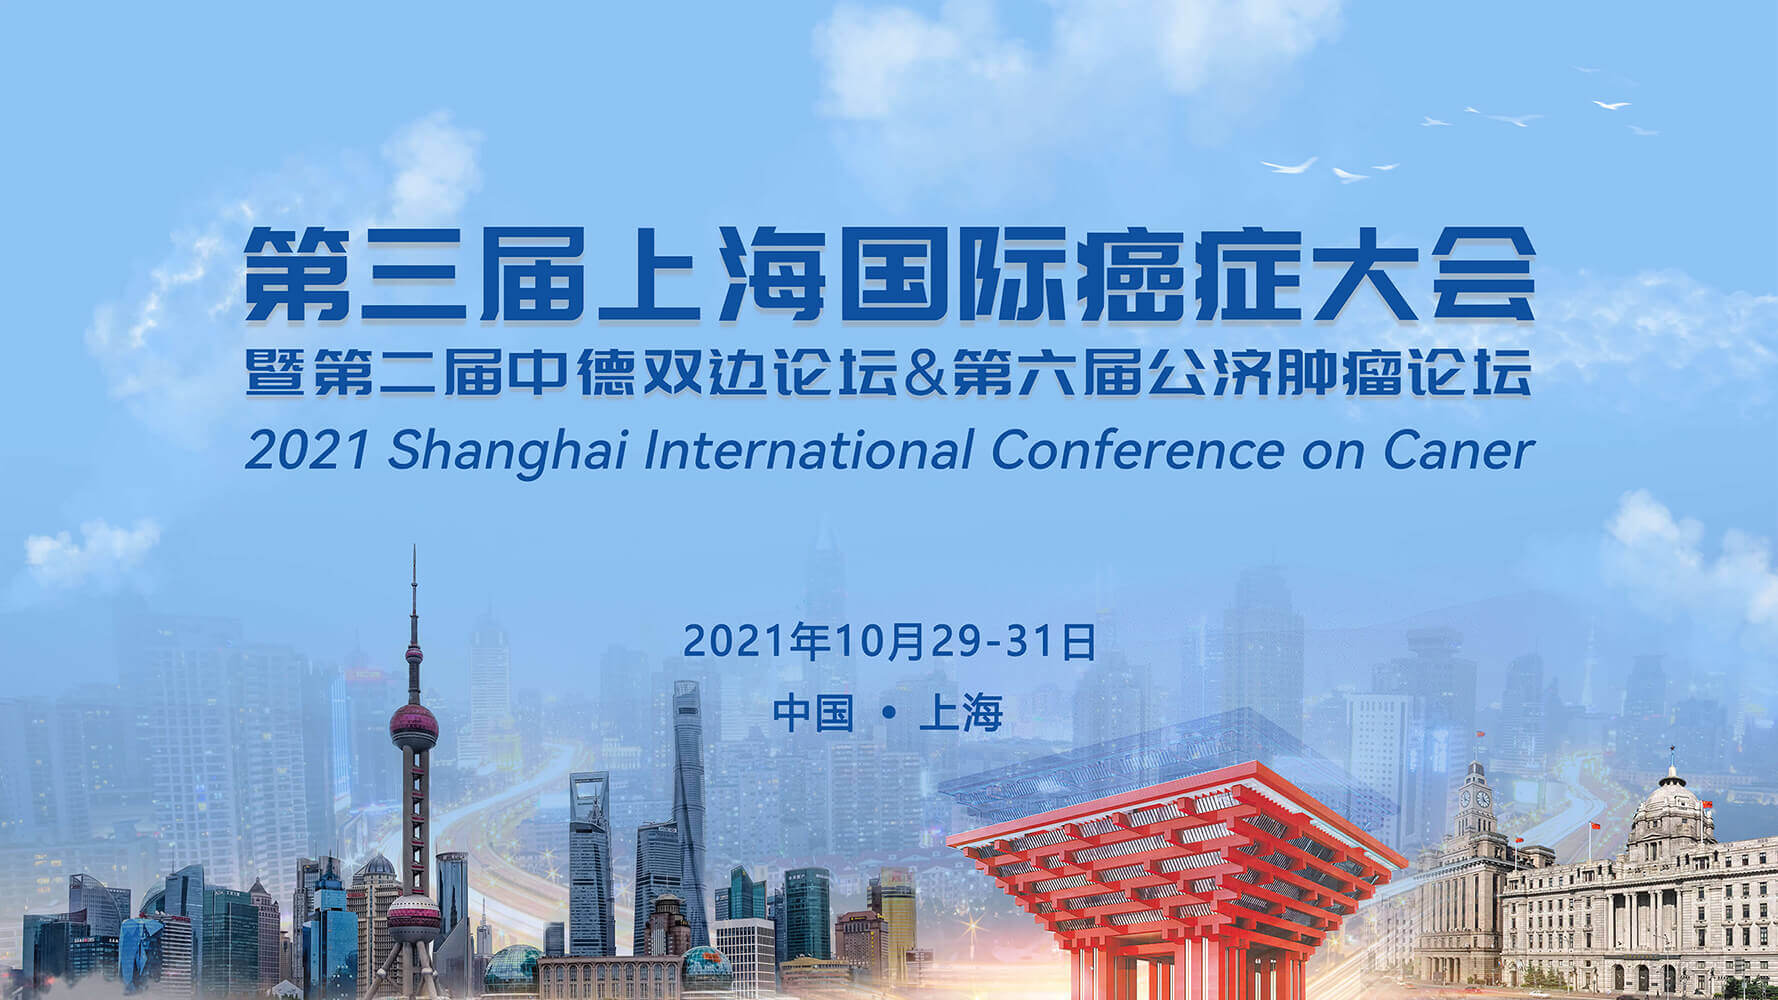 会议通知 |鼎晶生物邀您共赴第三届上海国际癌症大会